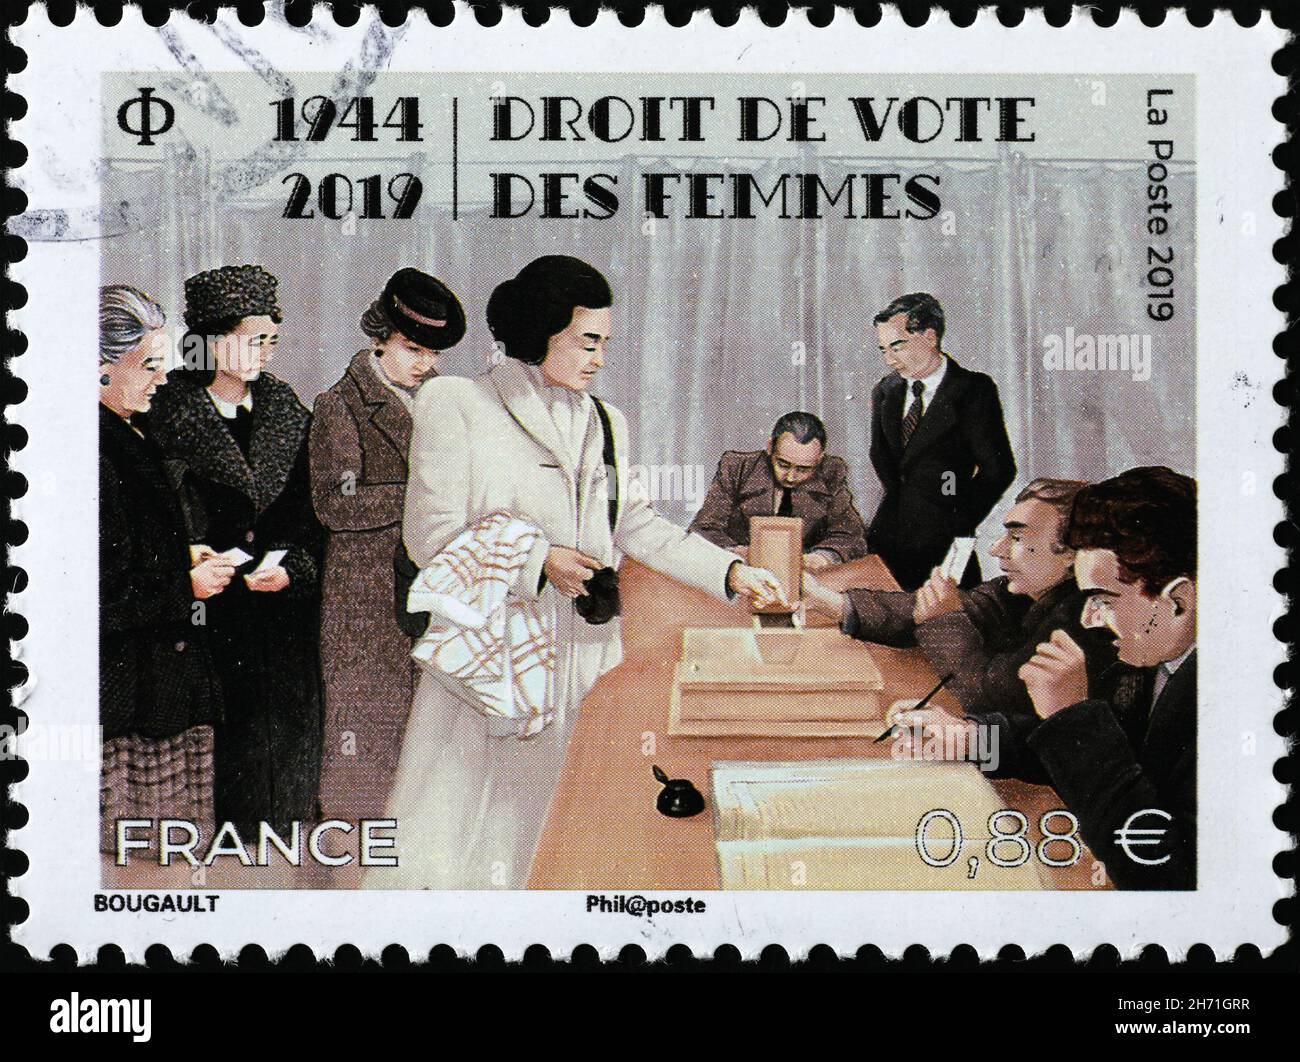 Derecho de voto para las mujeres celebrado con sello francés Foto de stock